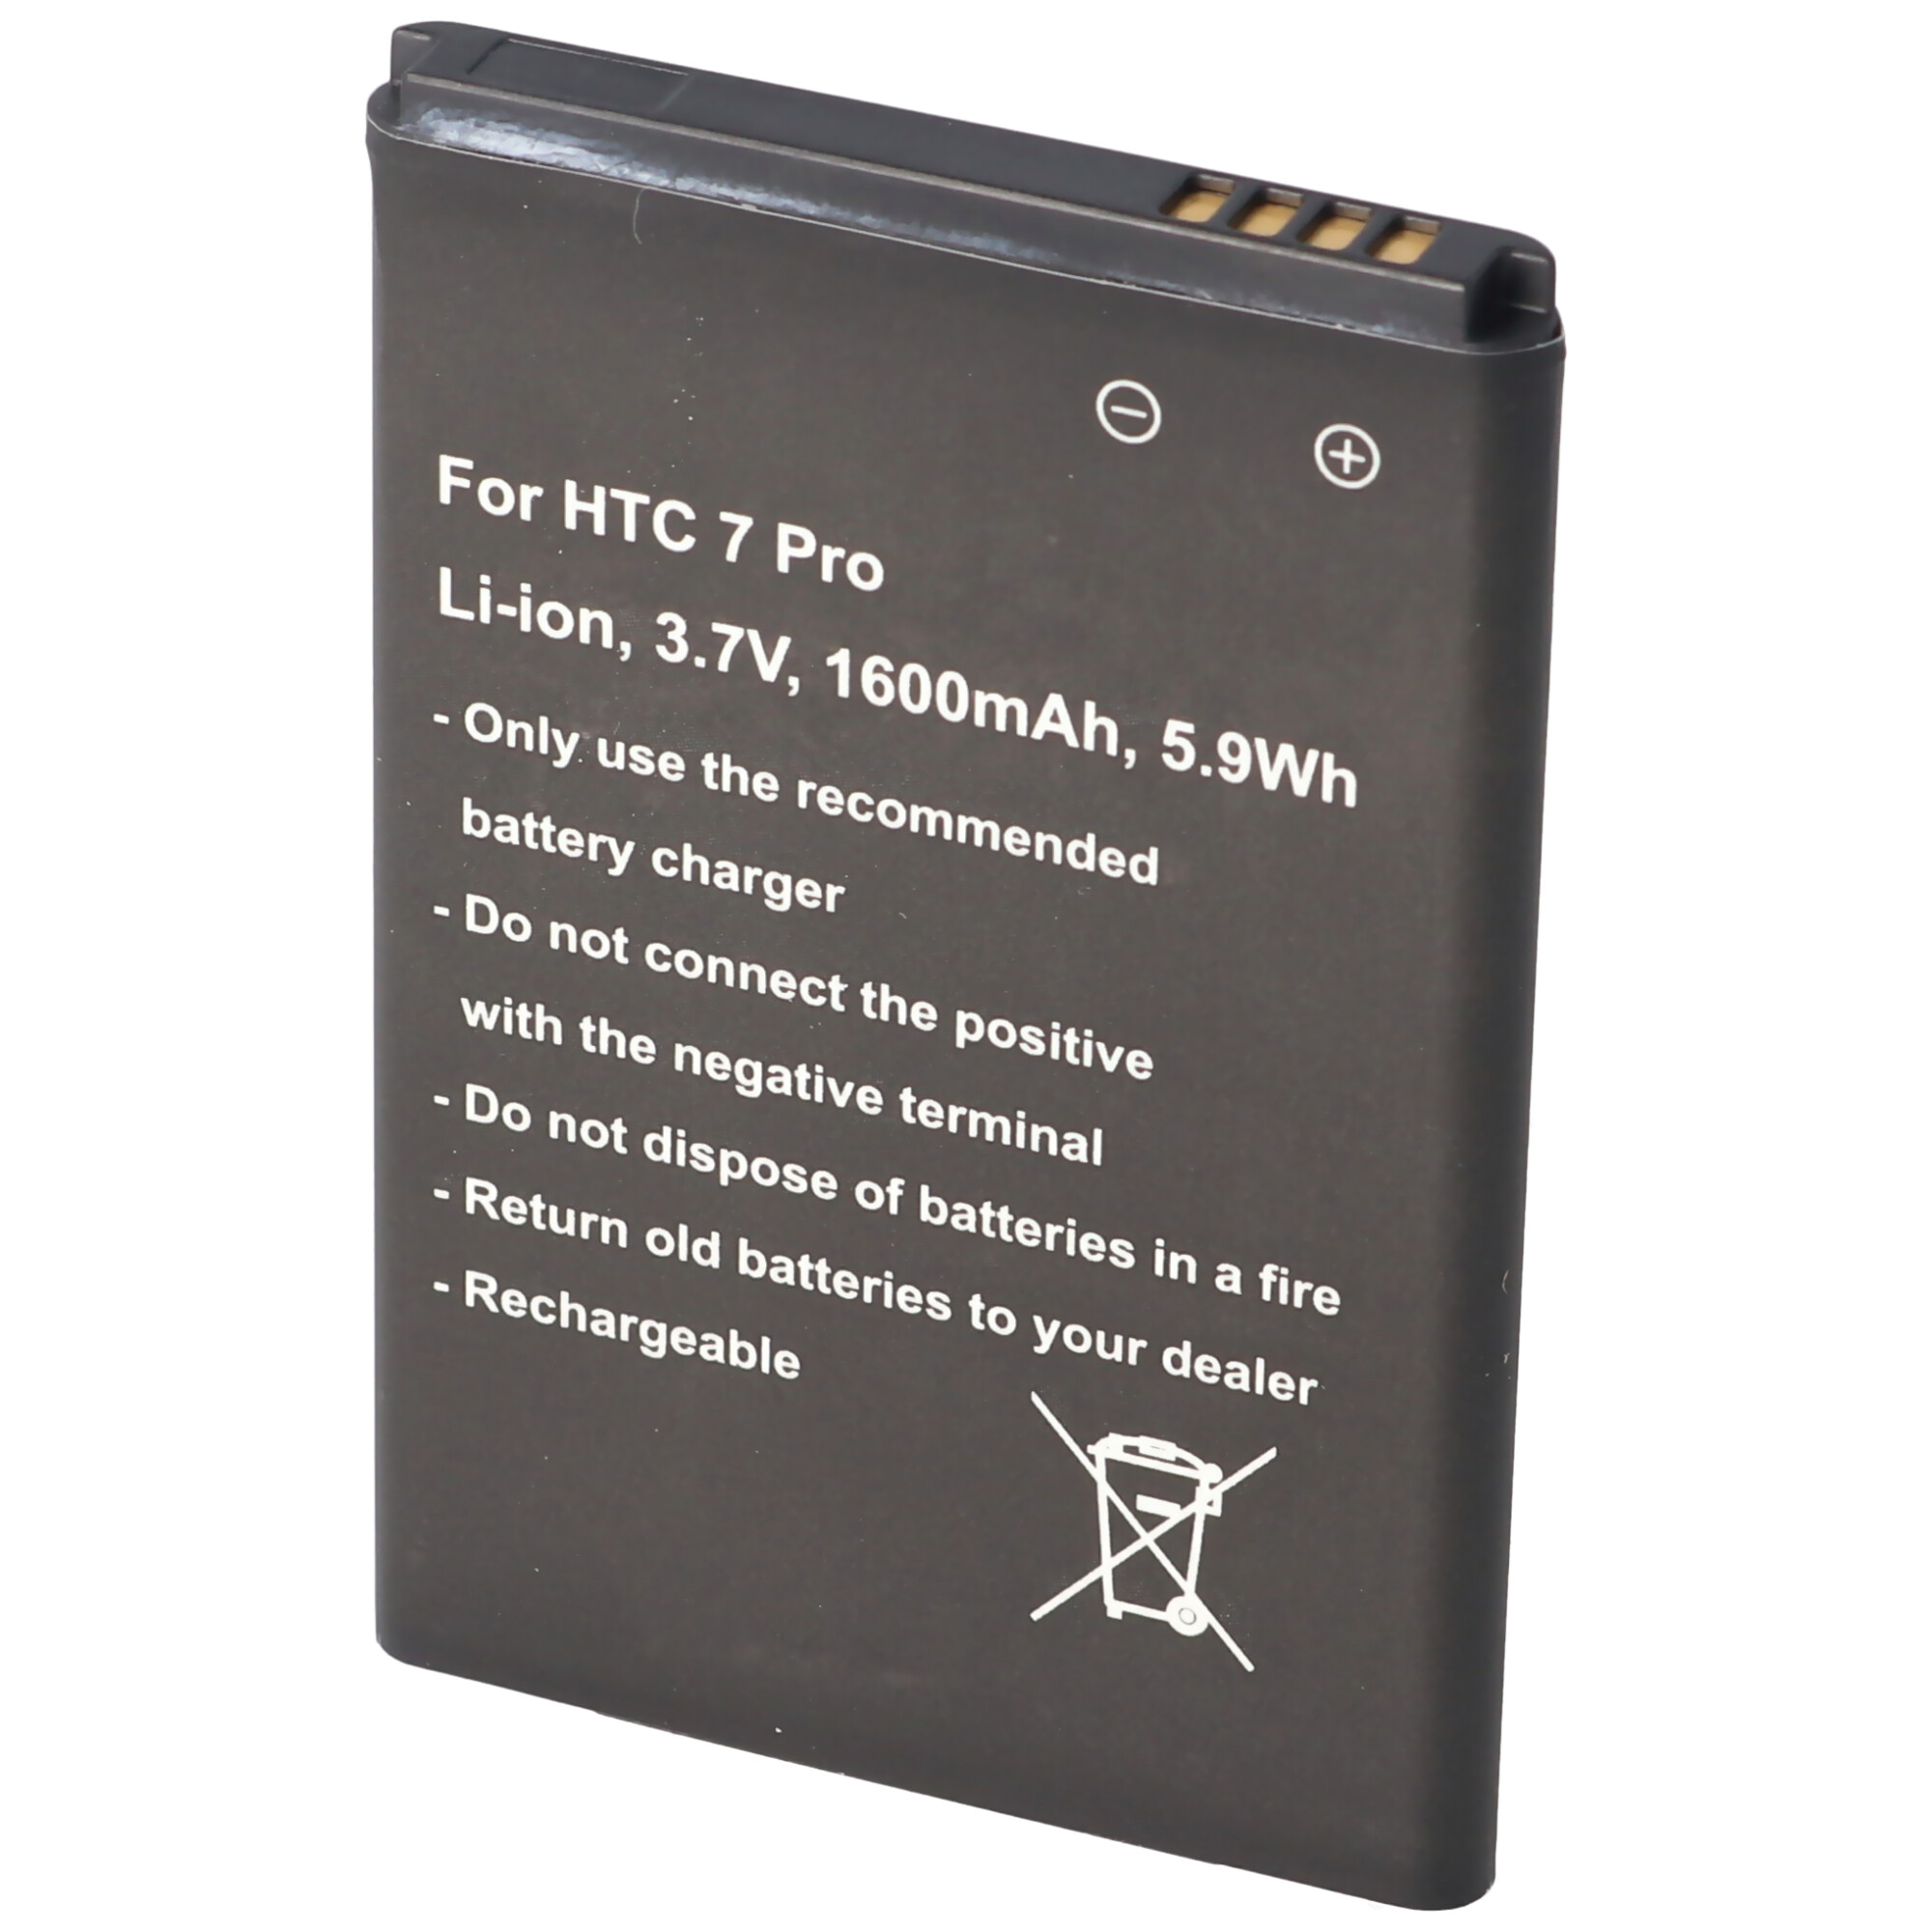 Akku passend für HTC 7 Pro, Li-Ion, 3,7V, 1600mAh, 5,9Wh